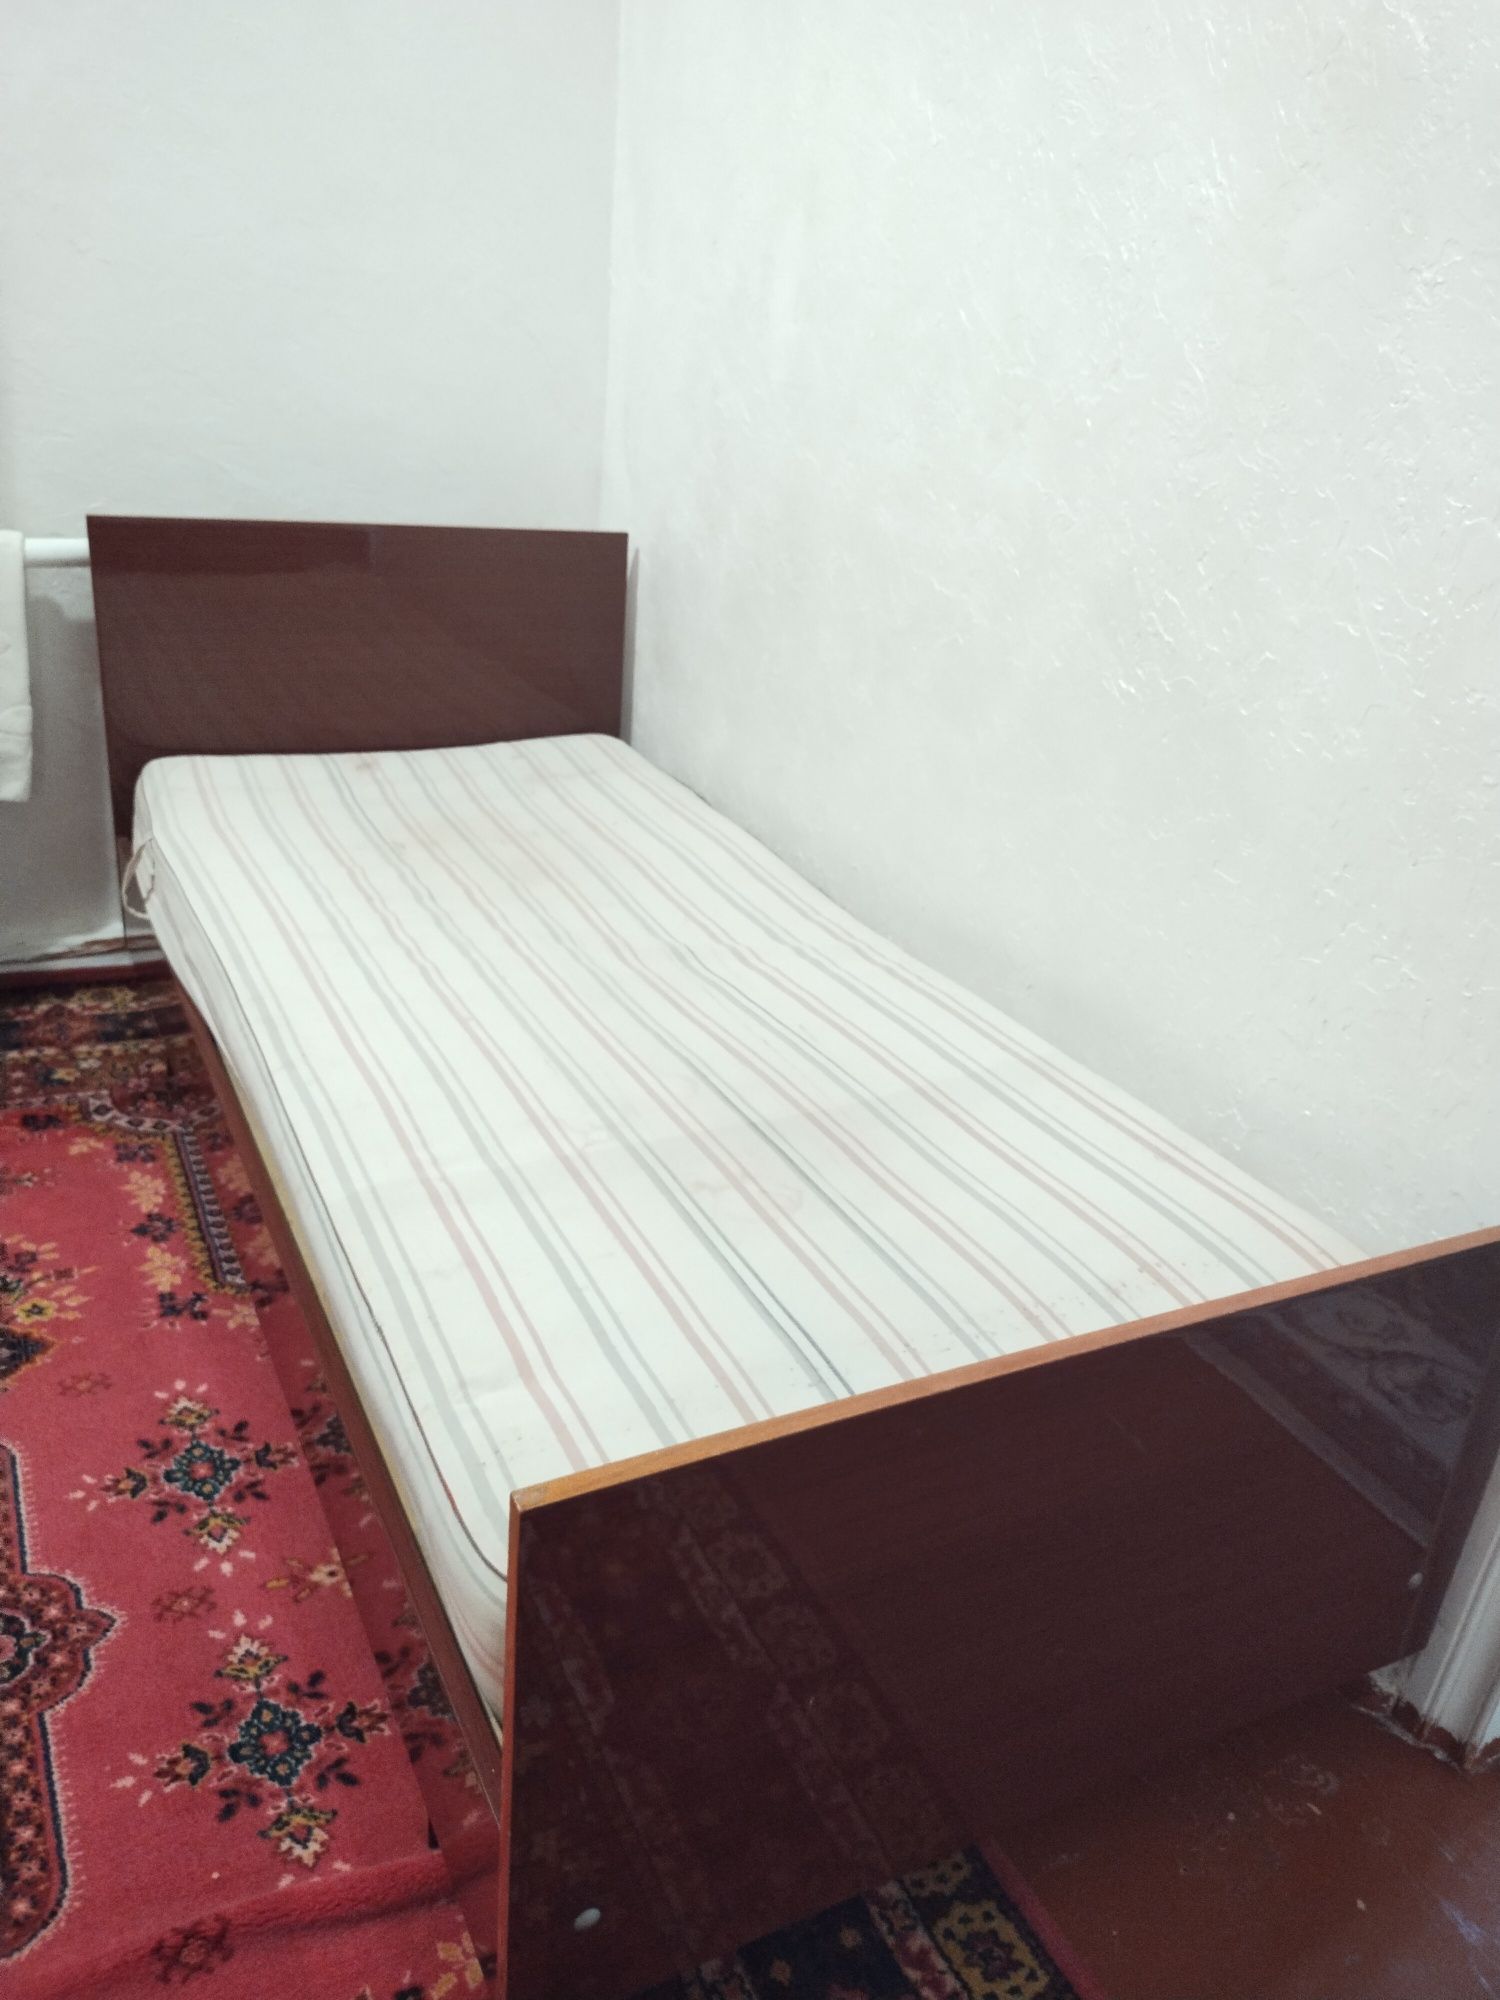 Продается одна спальная кровать с матрасом